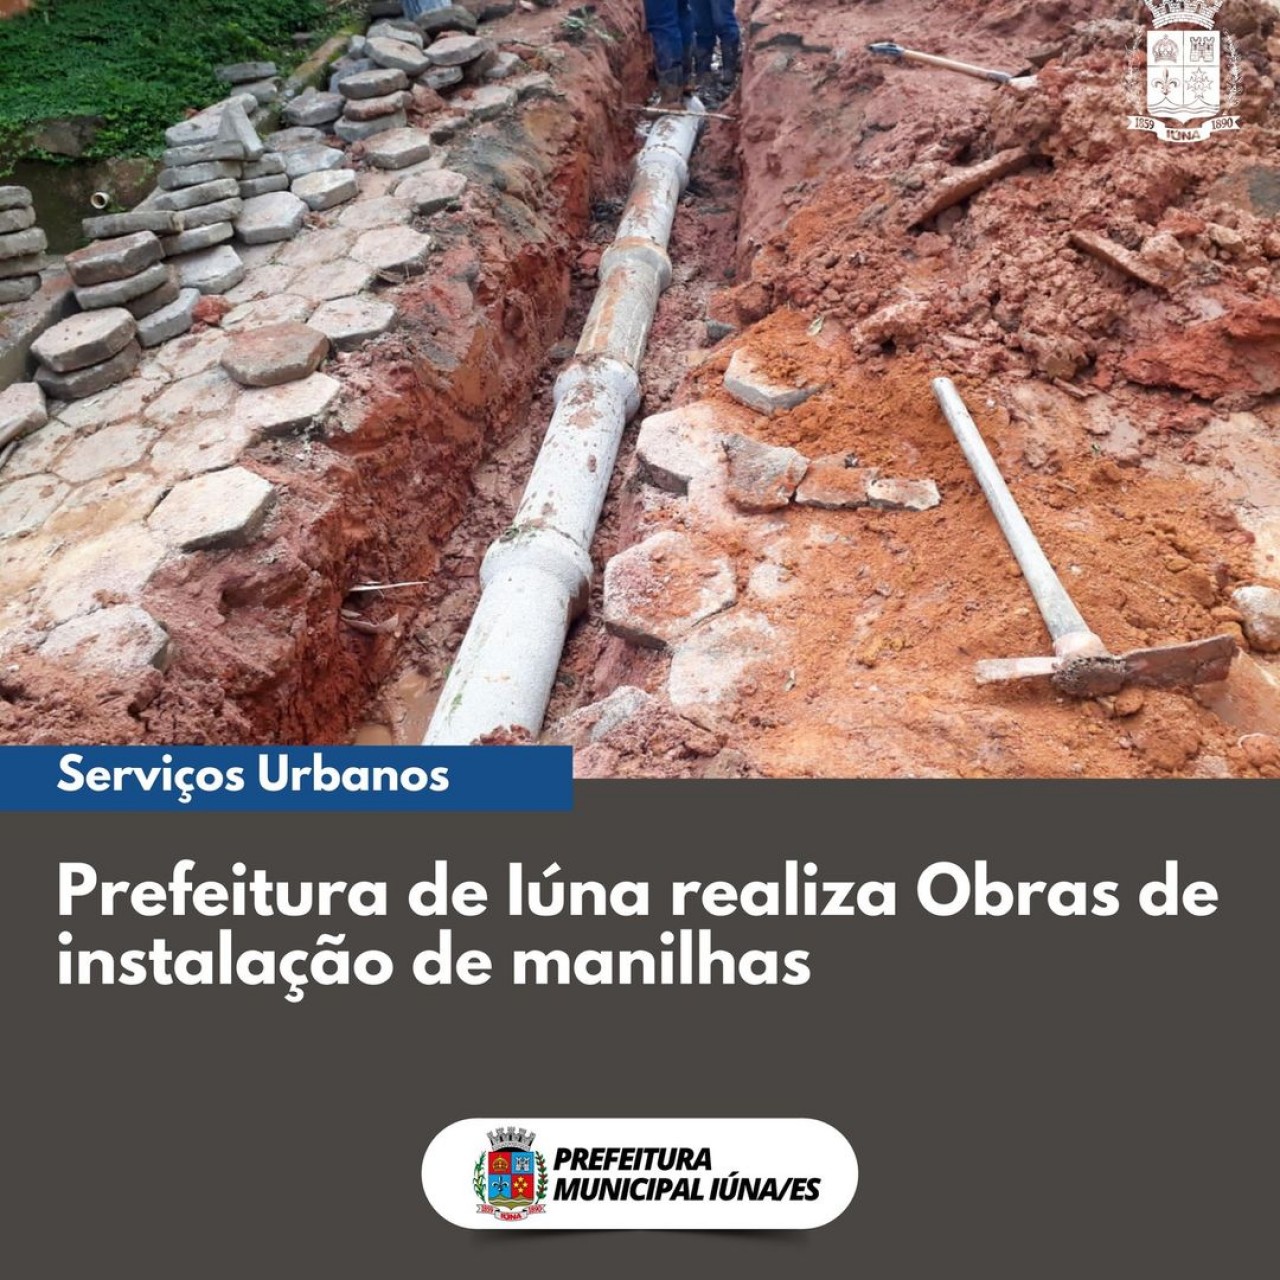 OBRAS 88 -  instalação de manilhas sendo realizados em todo o município.